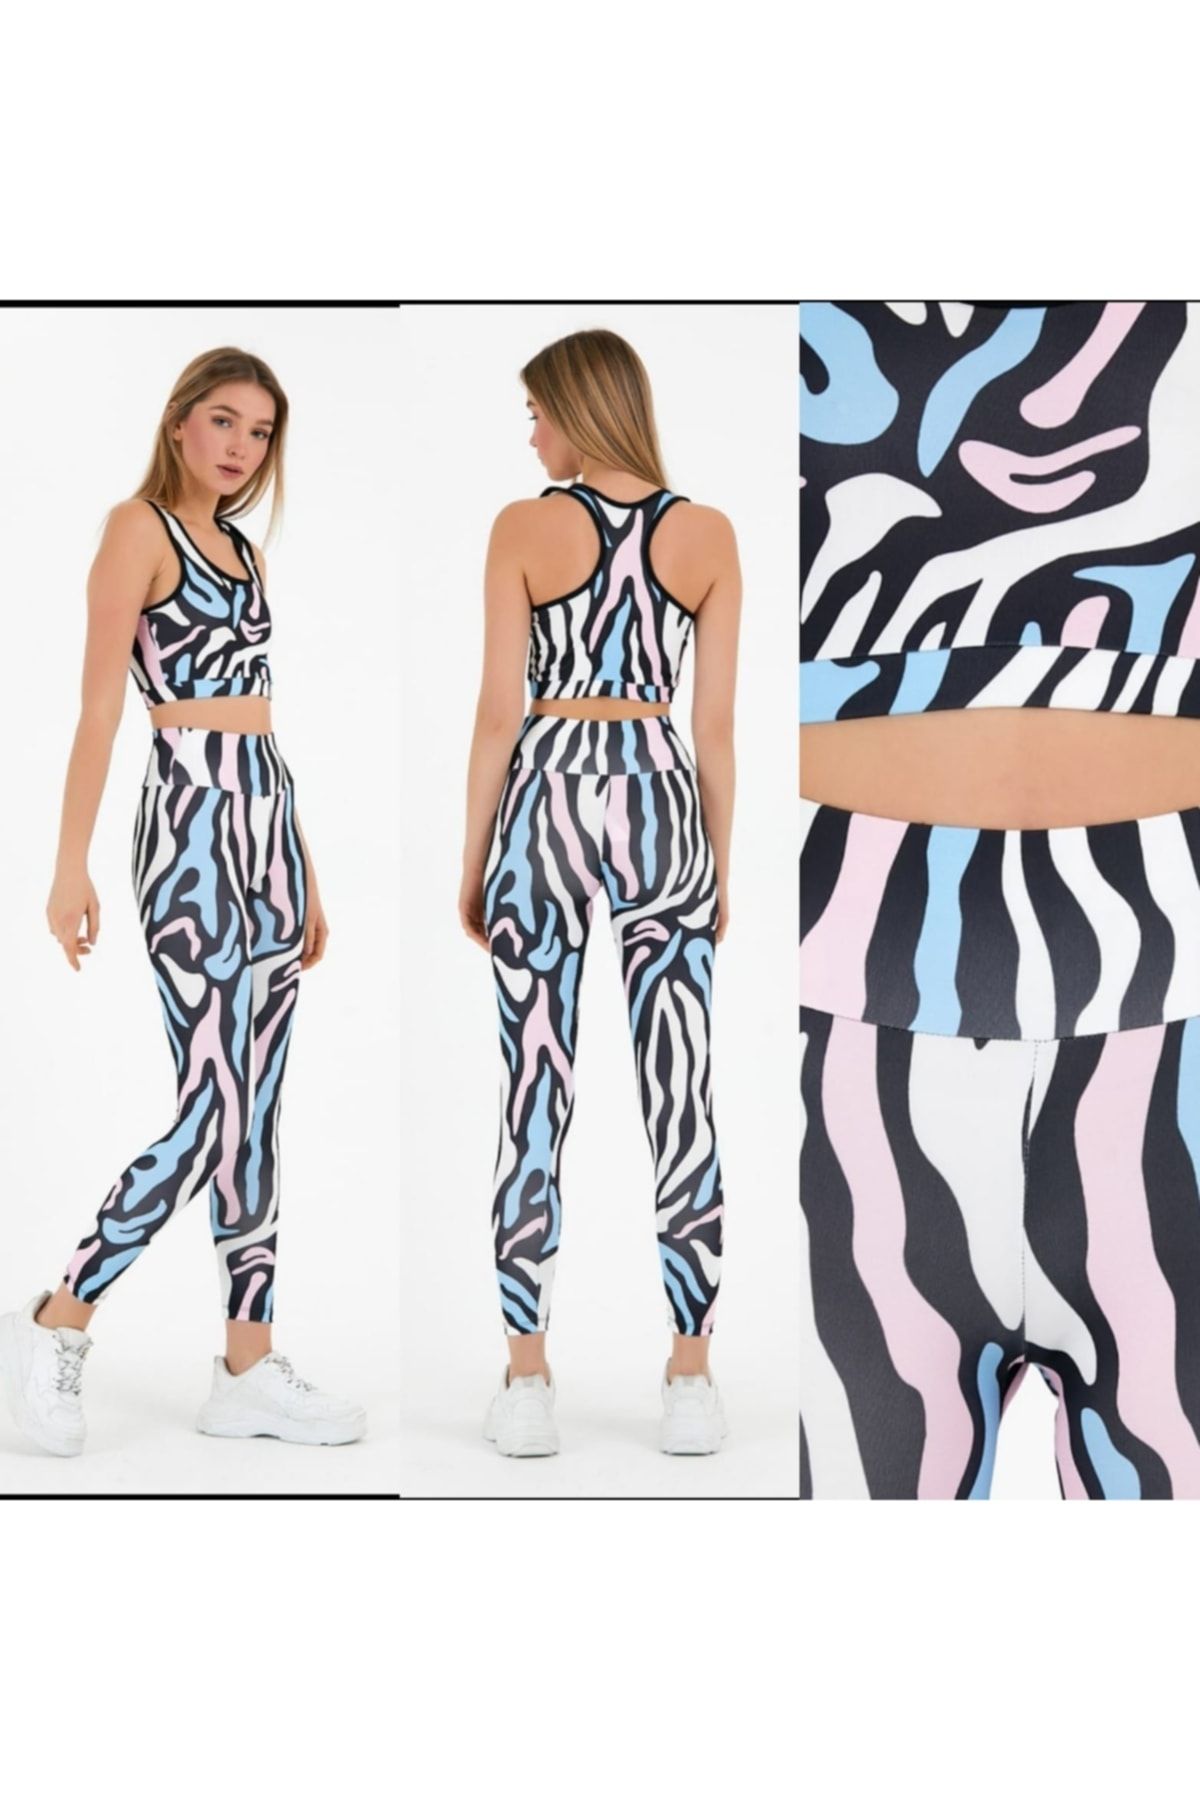 Lolliboomkids Kadın Giyim Sportif Tayt Takım Dijital Renkli Zebra Desen Baskılı Tayt Crop Büstiyer Sütyenli Takım